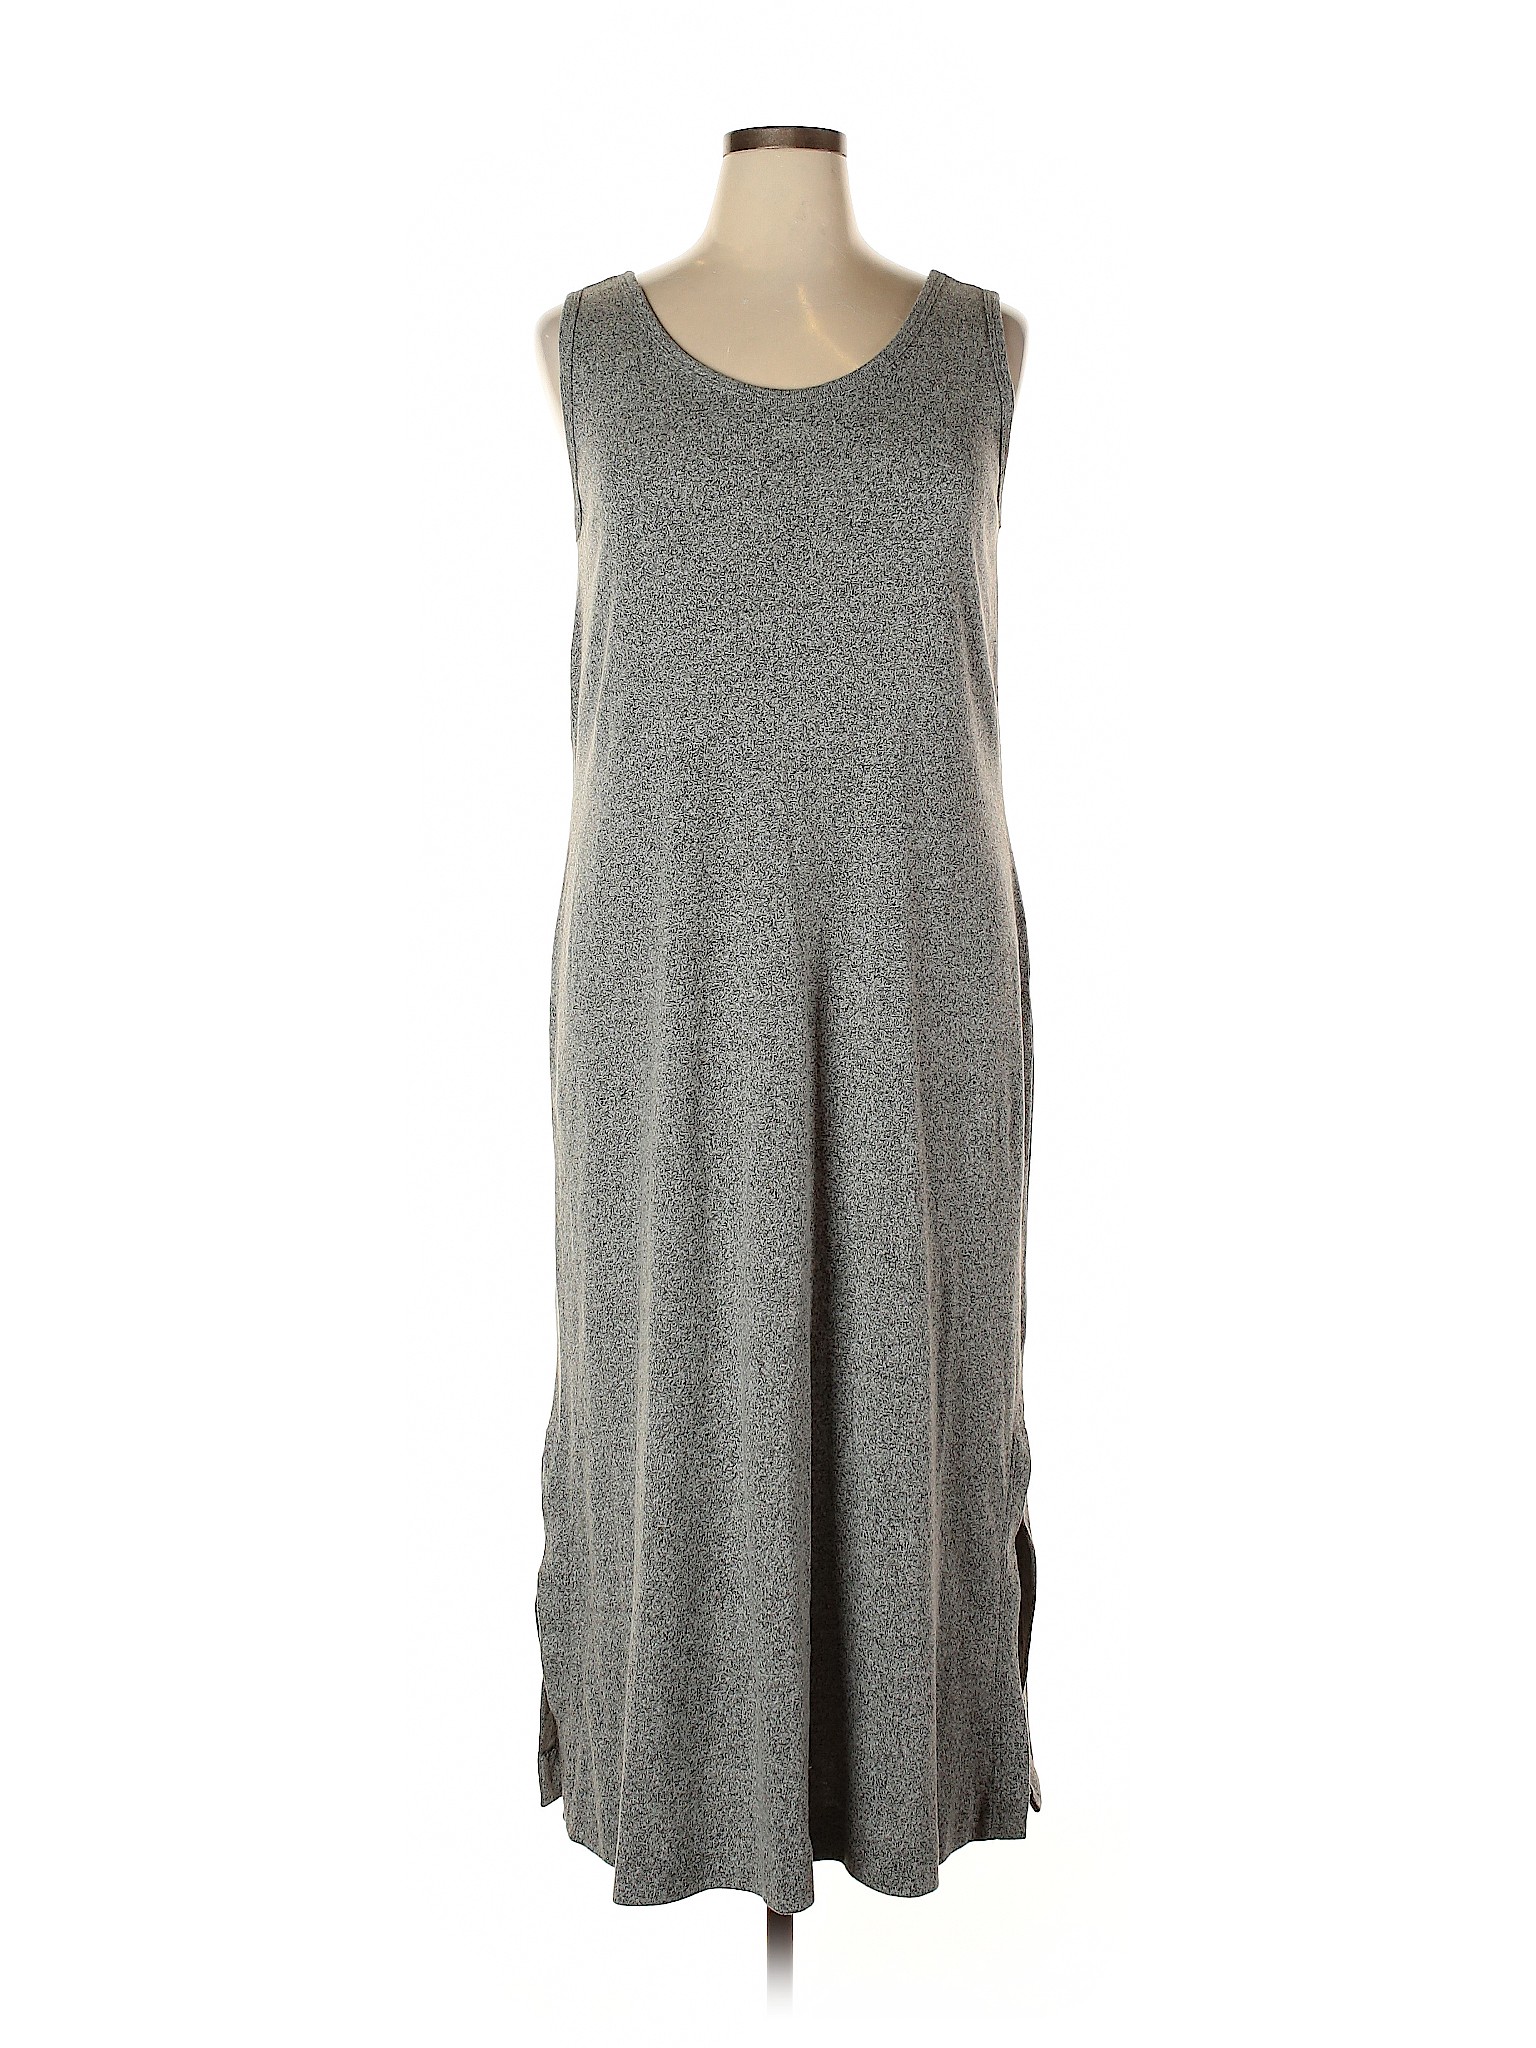 J.Jill Women Gray Casual Dress XL | eBay